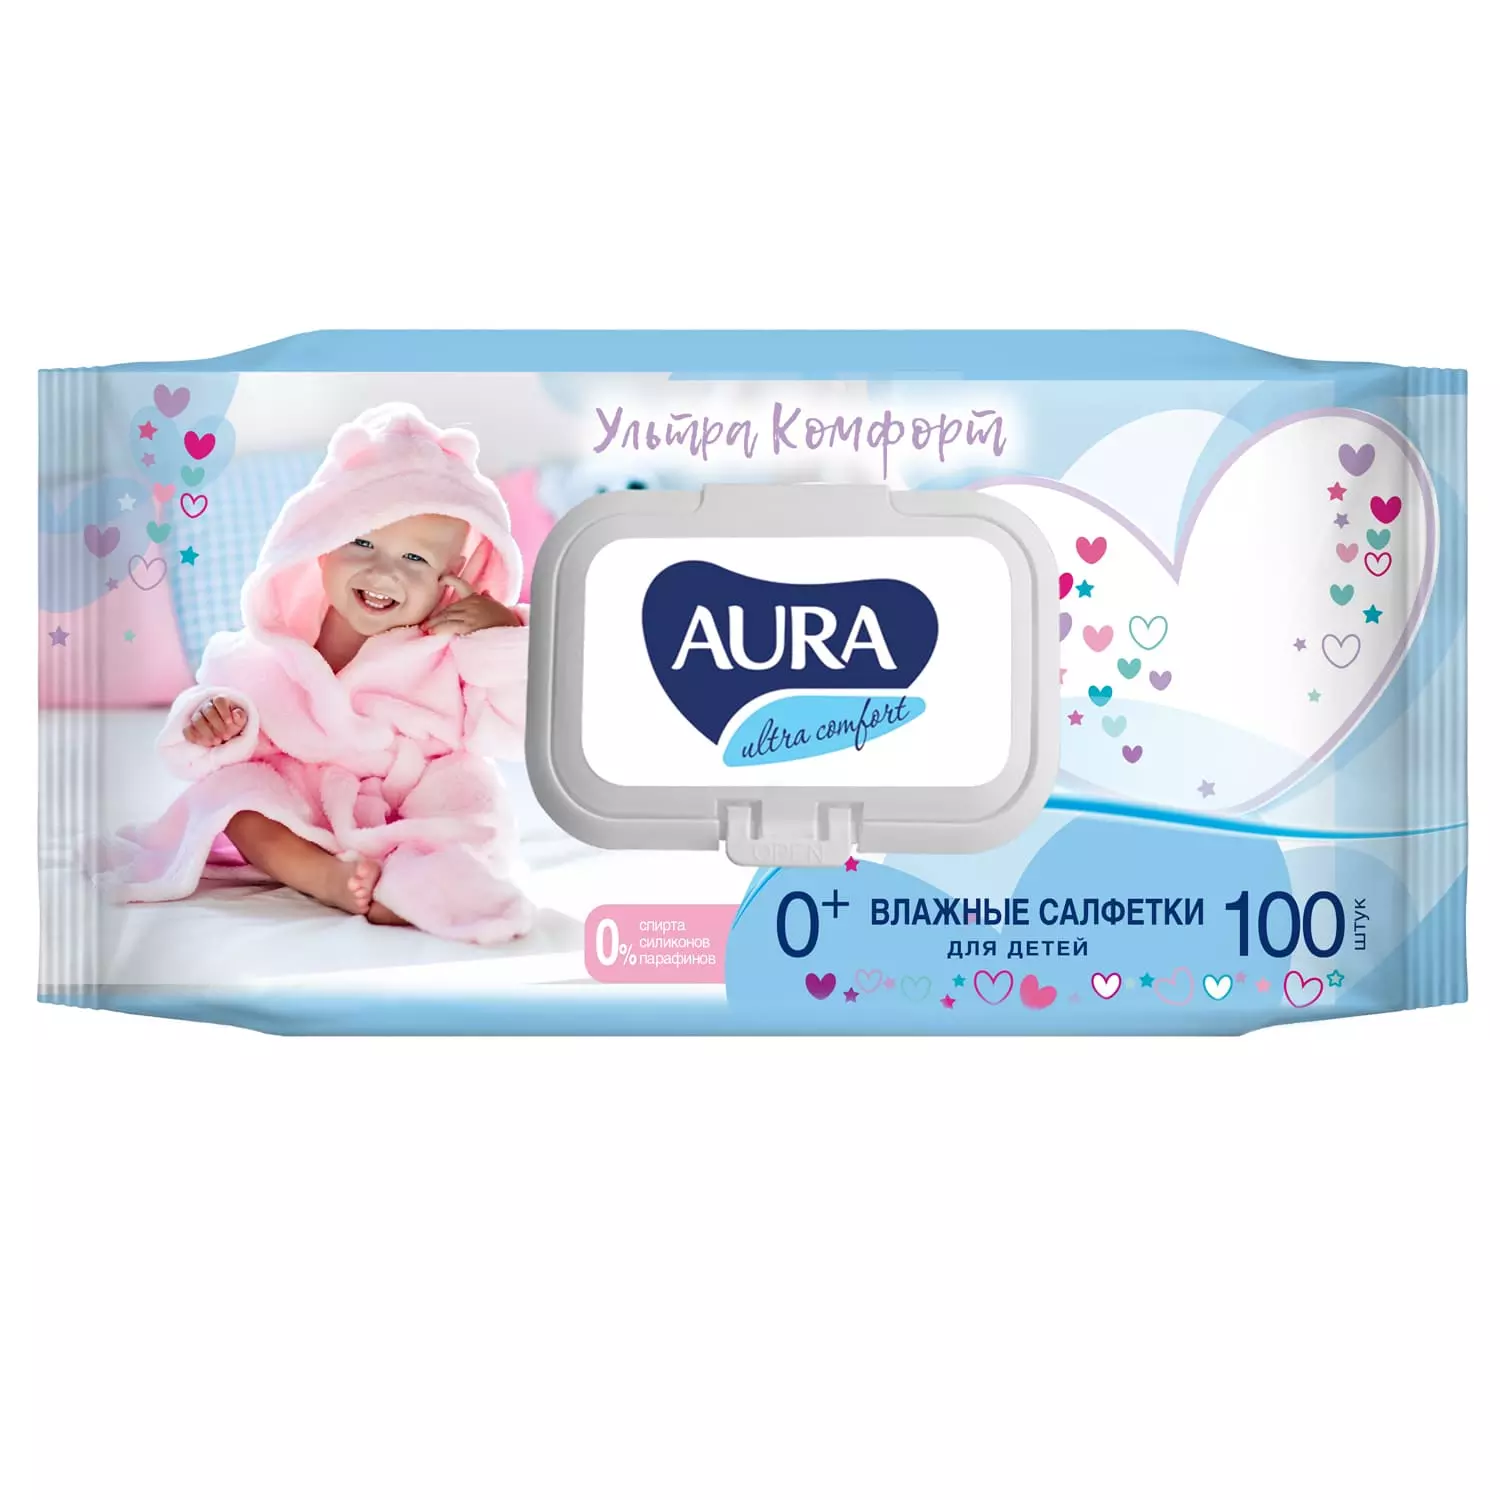 Влажные салфетки для детей Ultra Comfort с экстрактом алоэ и витамином Е 0+, 100 шт